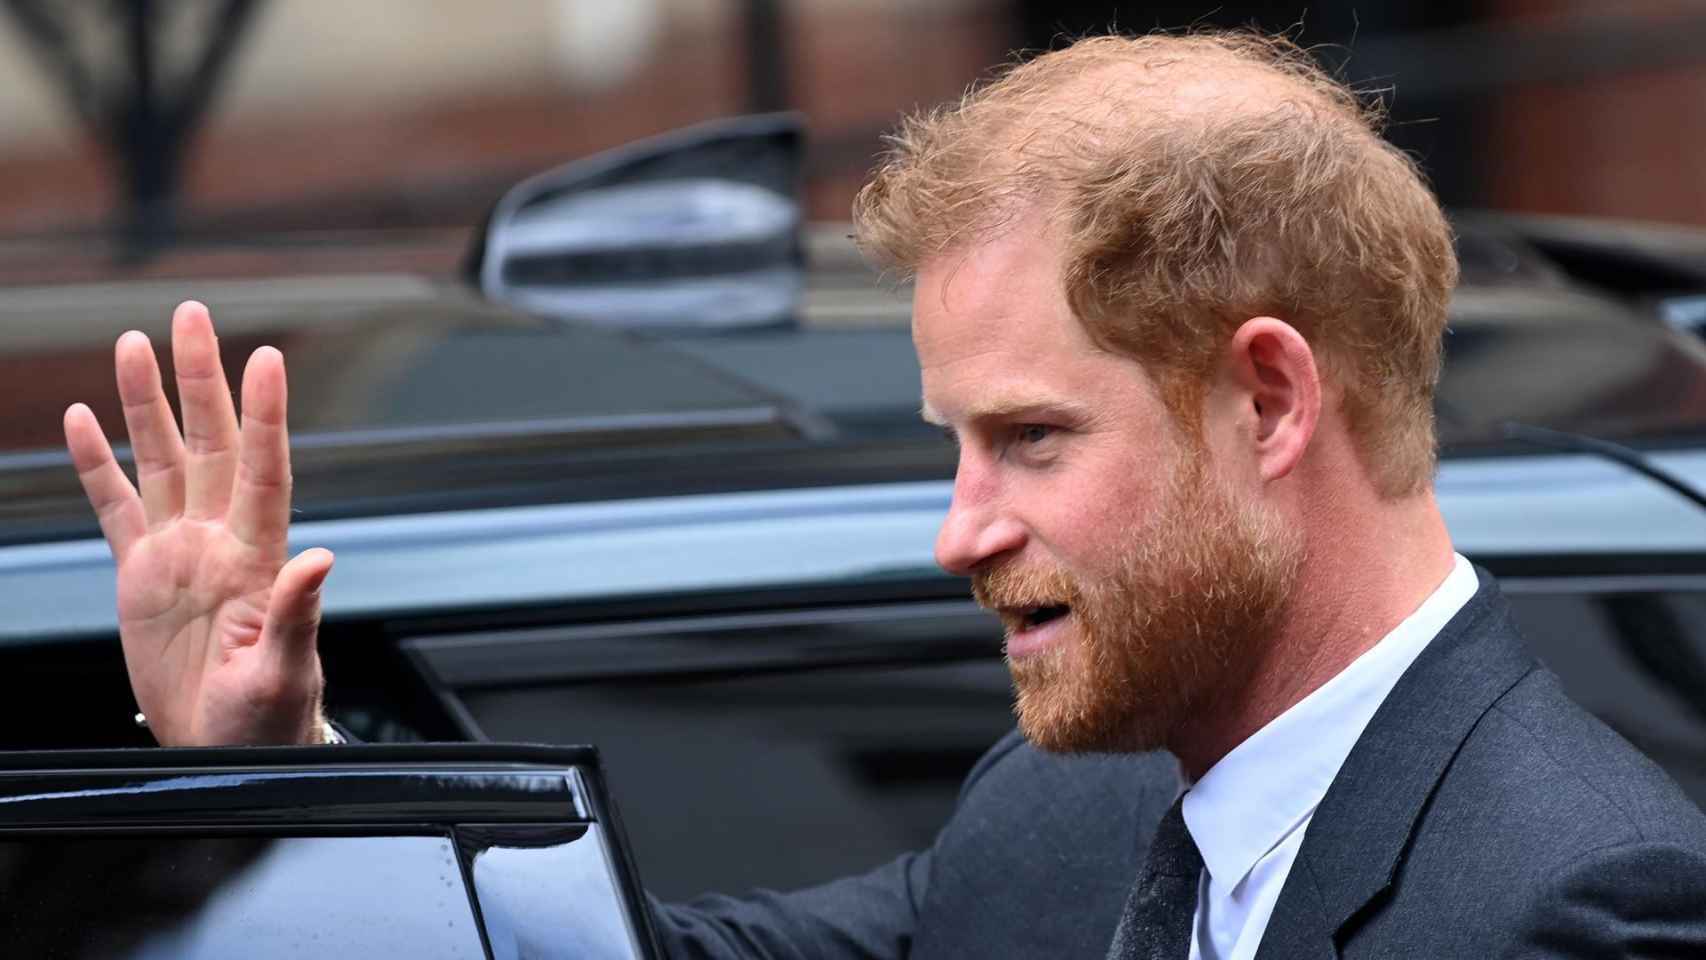 El príncipe Harry acude a los tribunales tras participar en la demanda colectiva contra el Daily Mail